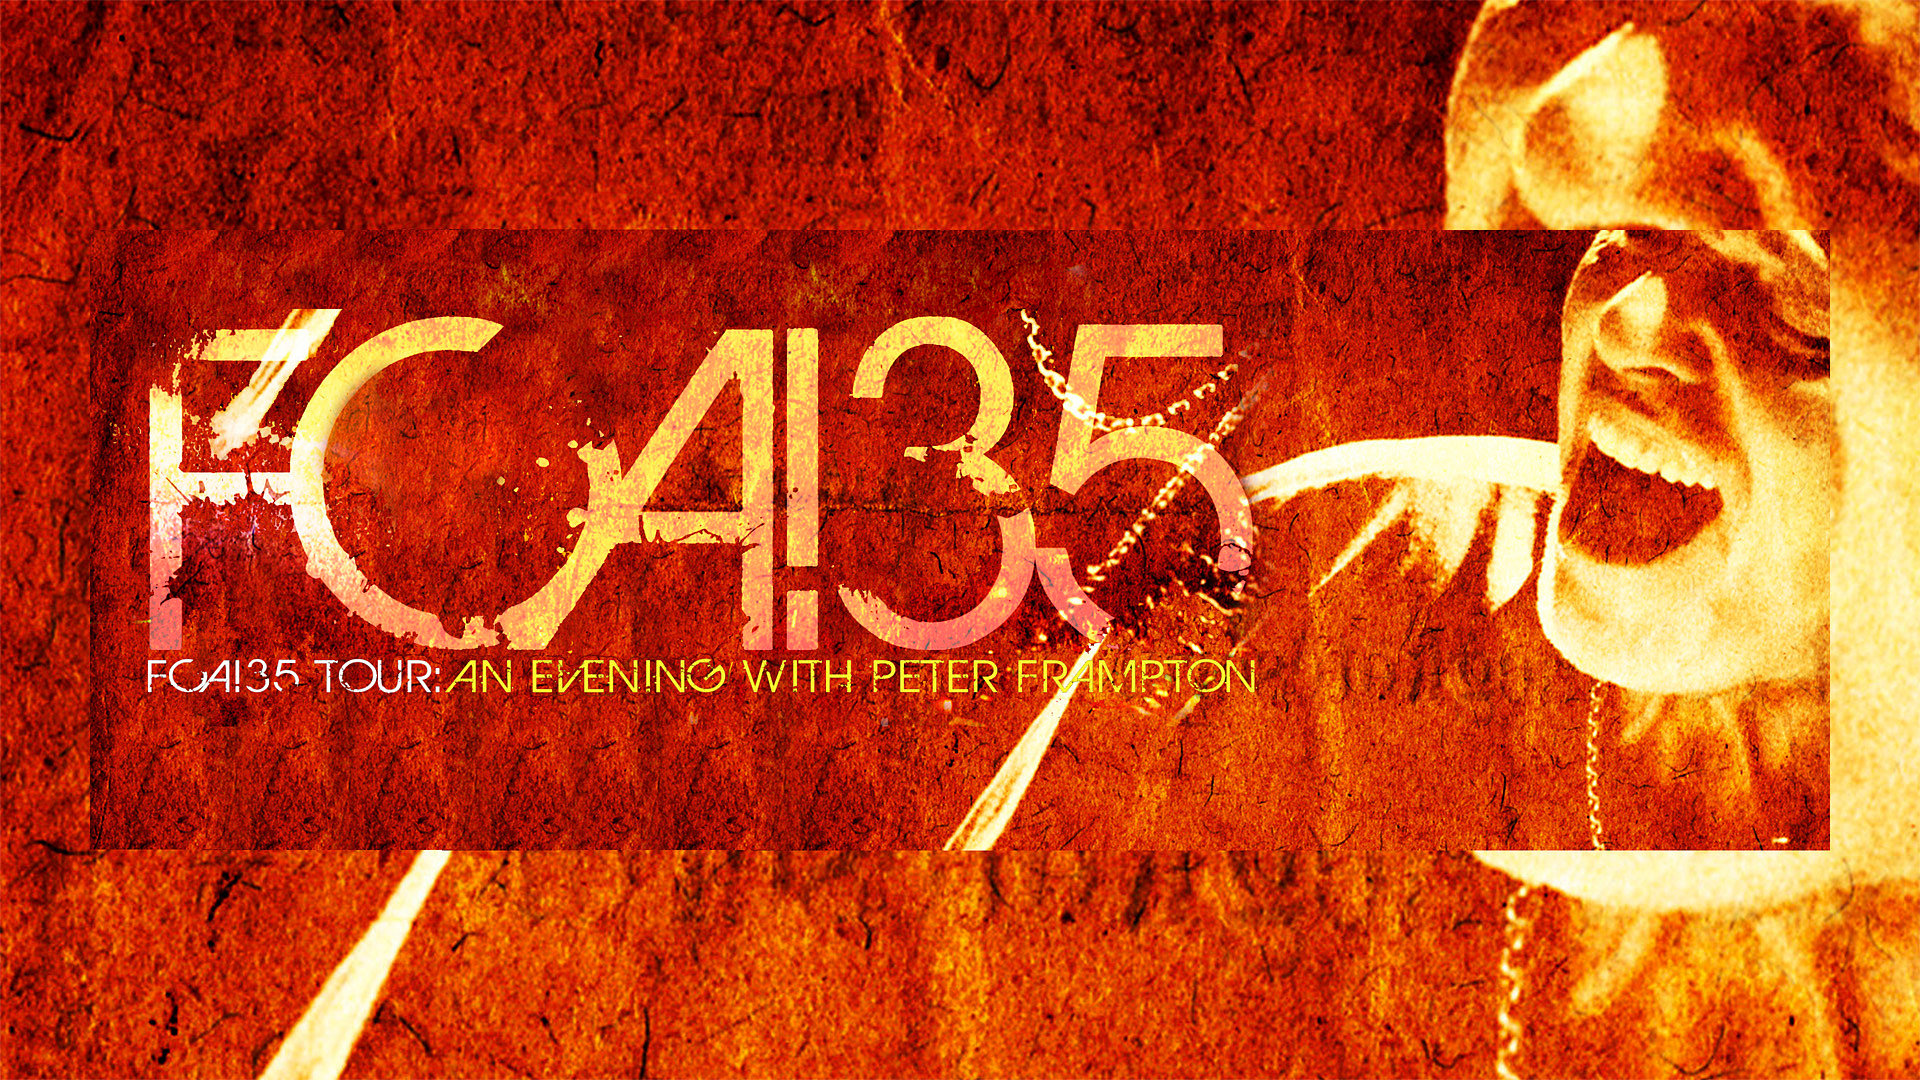 Peter Frampton - FCA!35 Tour: An Evening with Peter Frampton